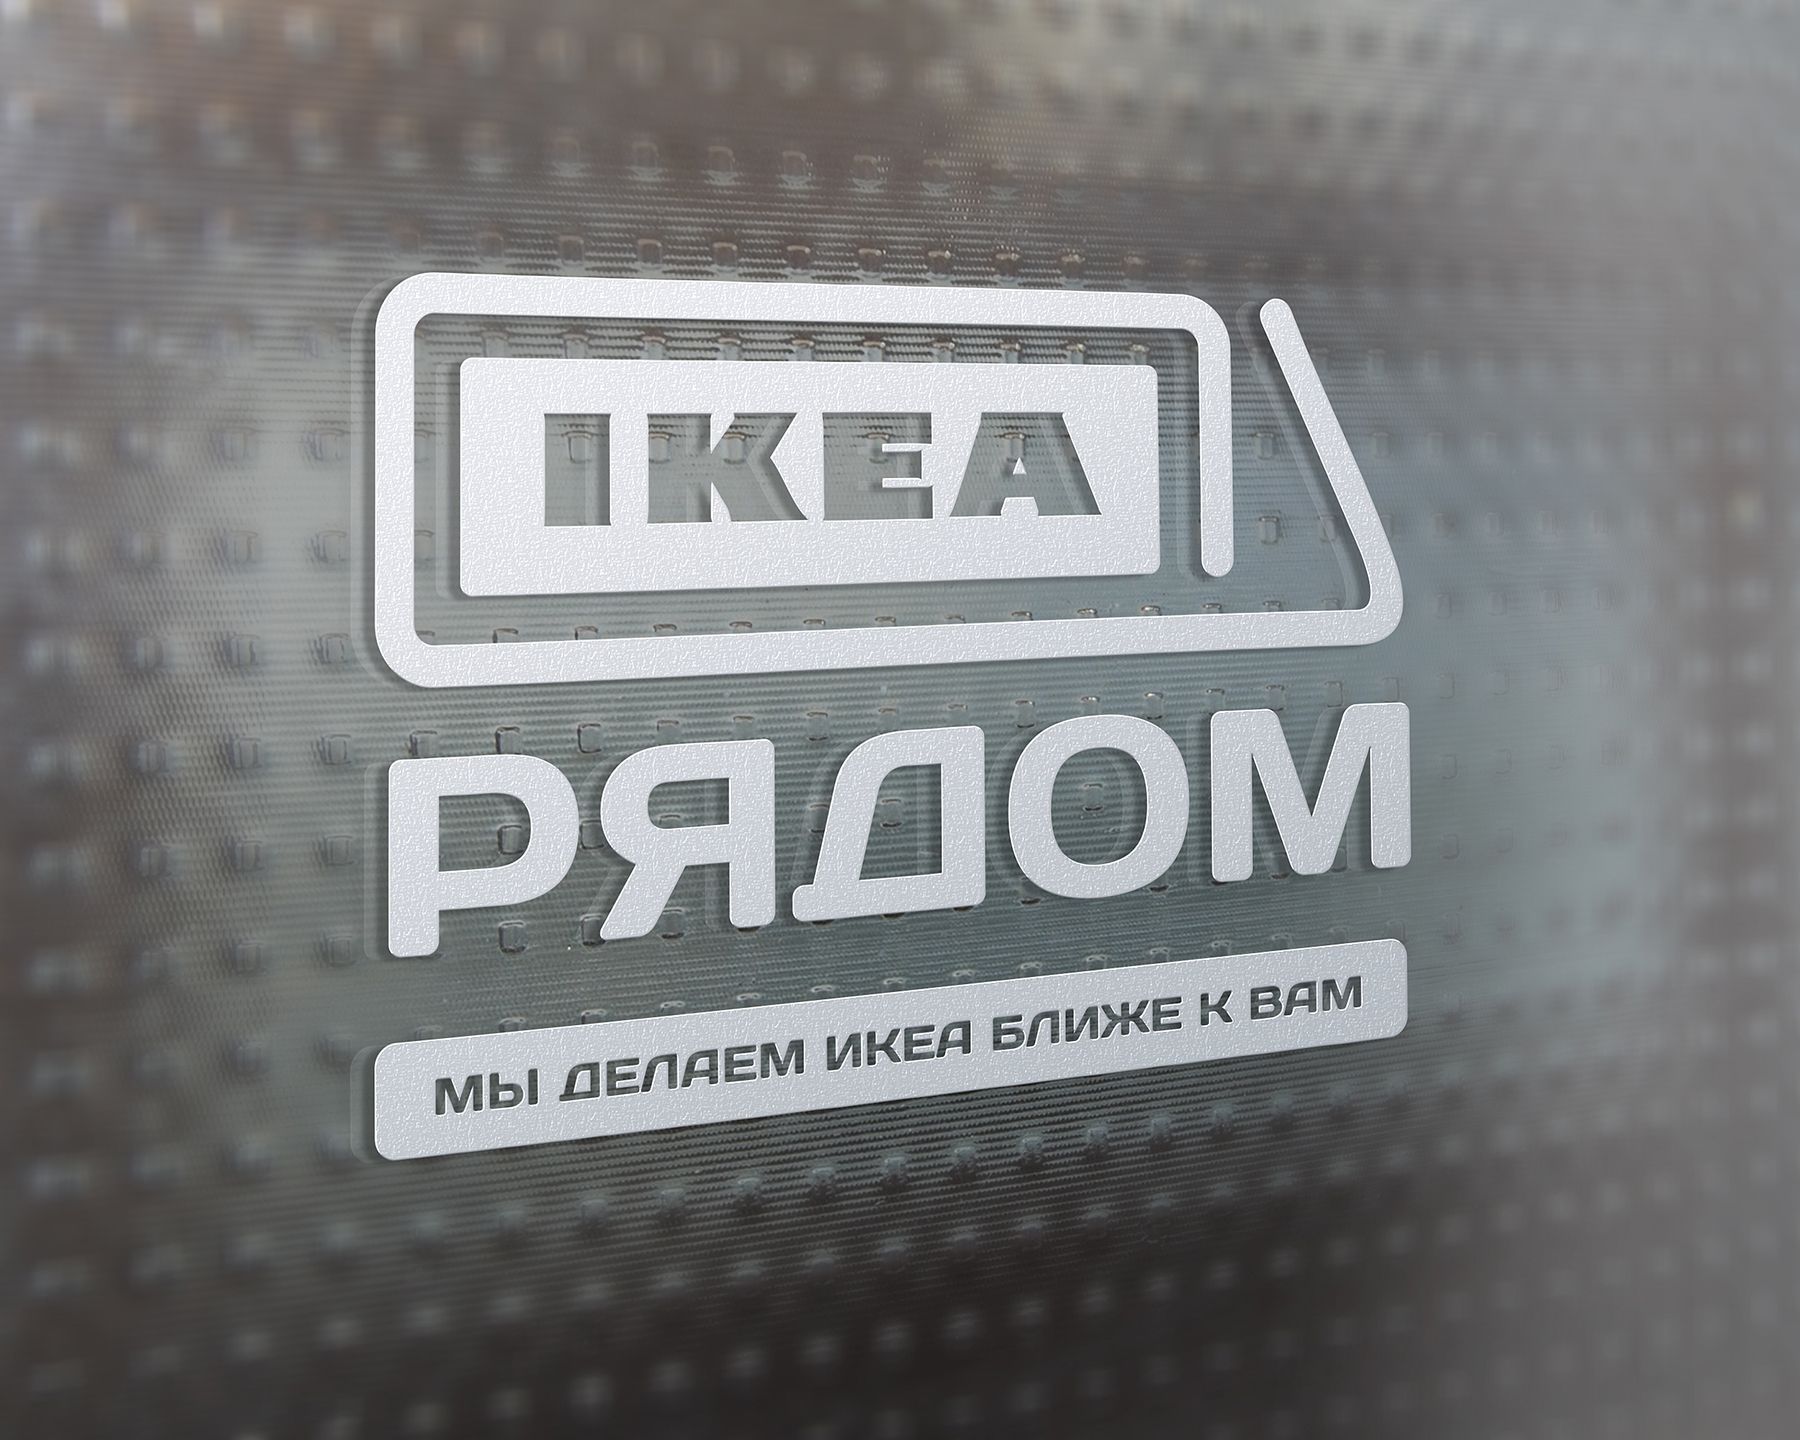 Логотип для ИКЕА РЯДОМ - дизайнер BulatBZ